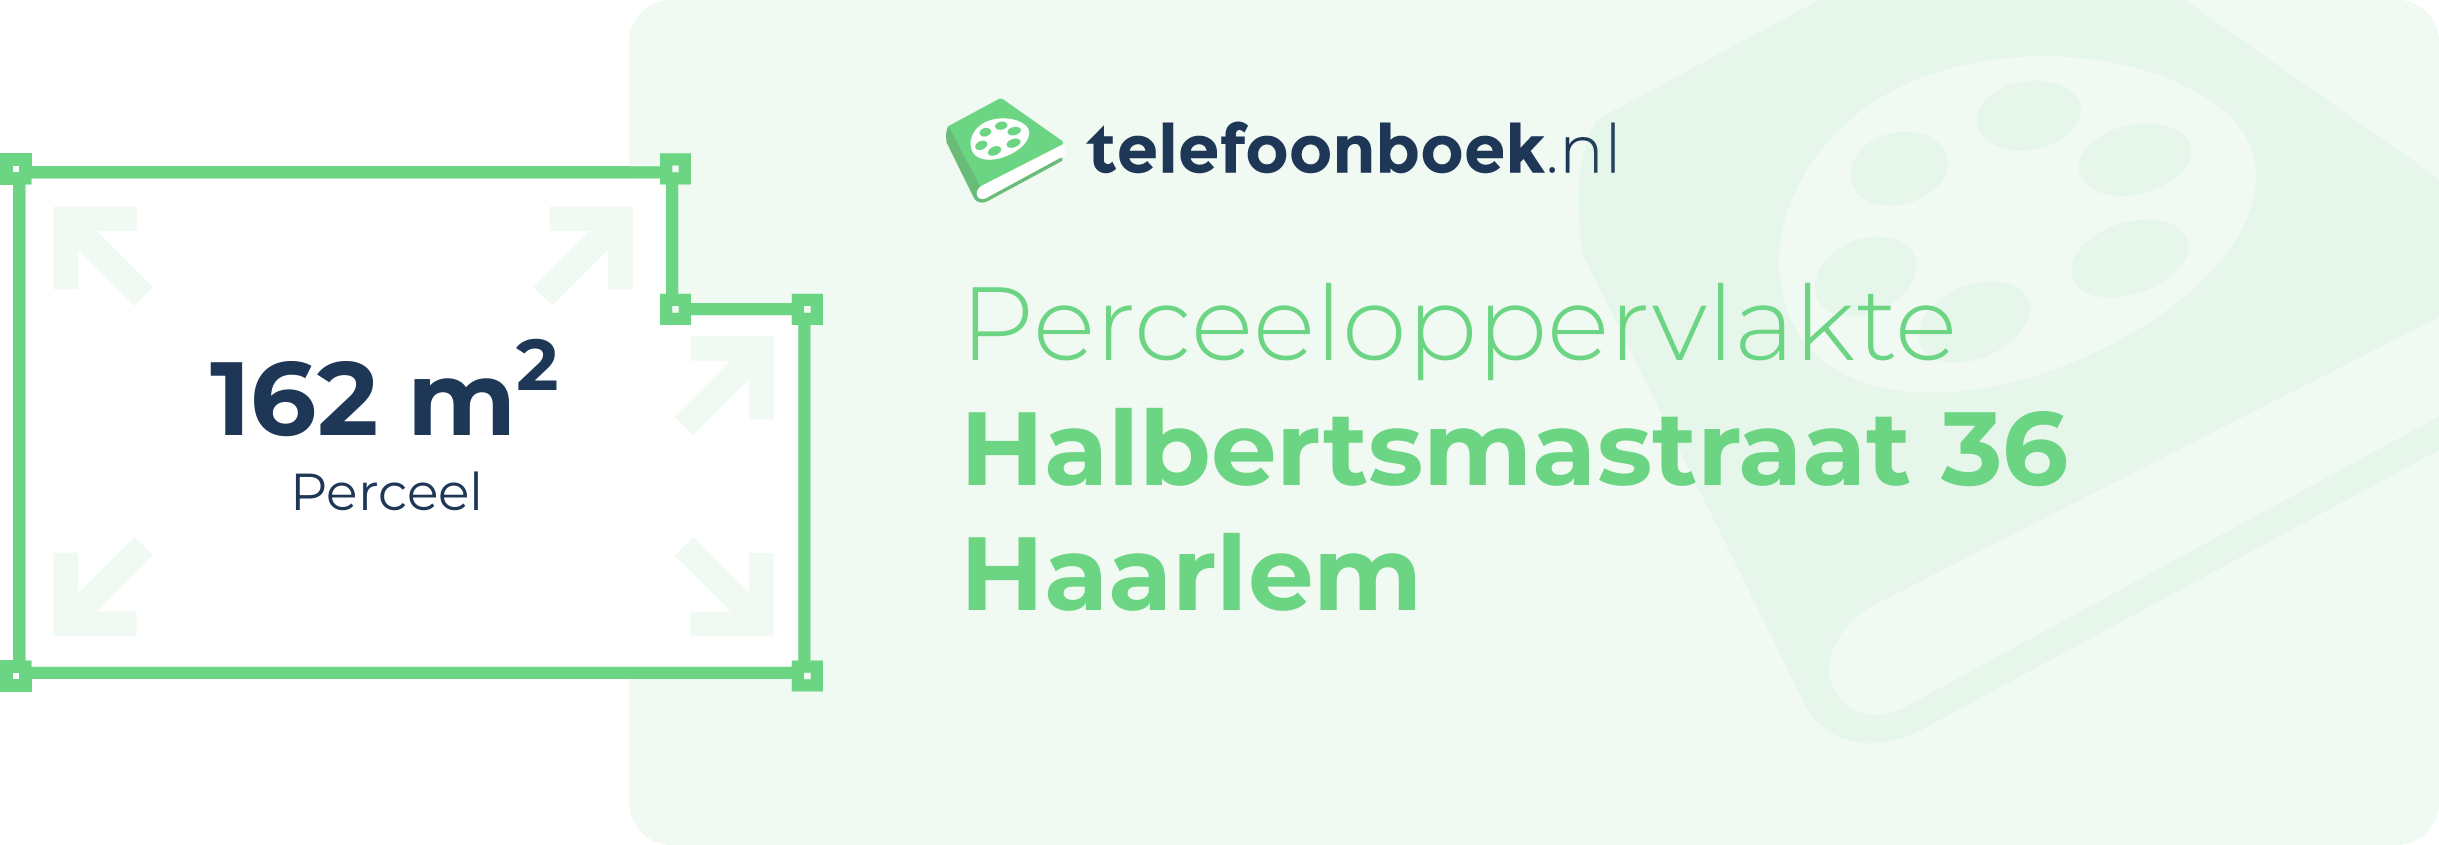 Perceeloppervlakte Halbertsmastraat 36 Haarlem